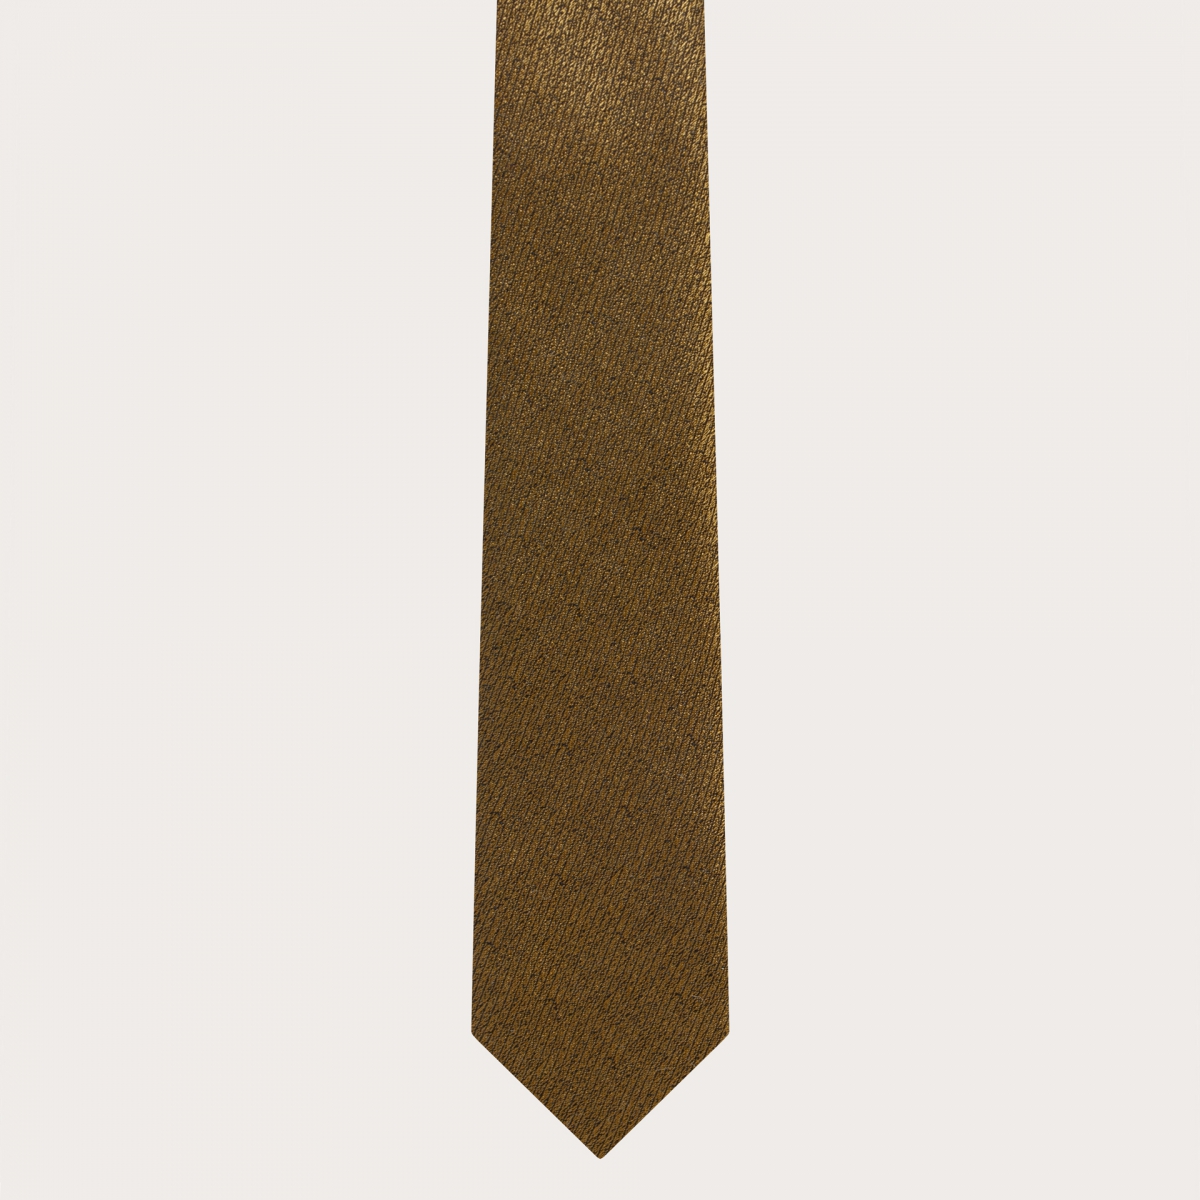 BRUCLE Ensemble cravate et pochette couleur or irisé